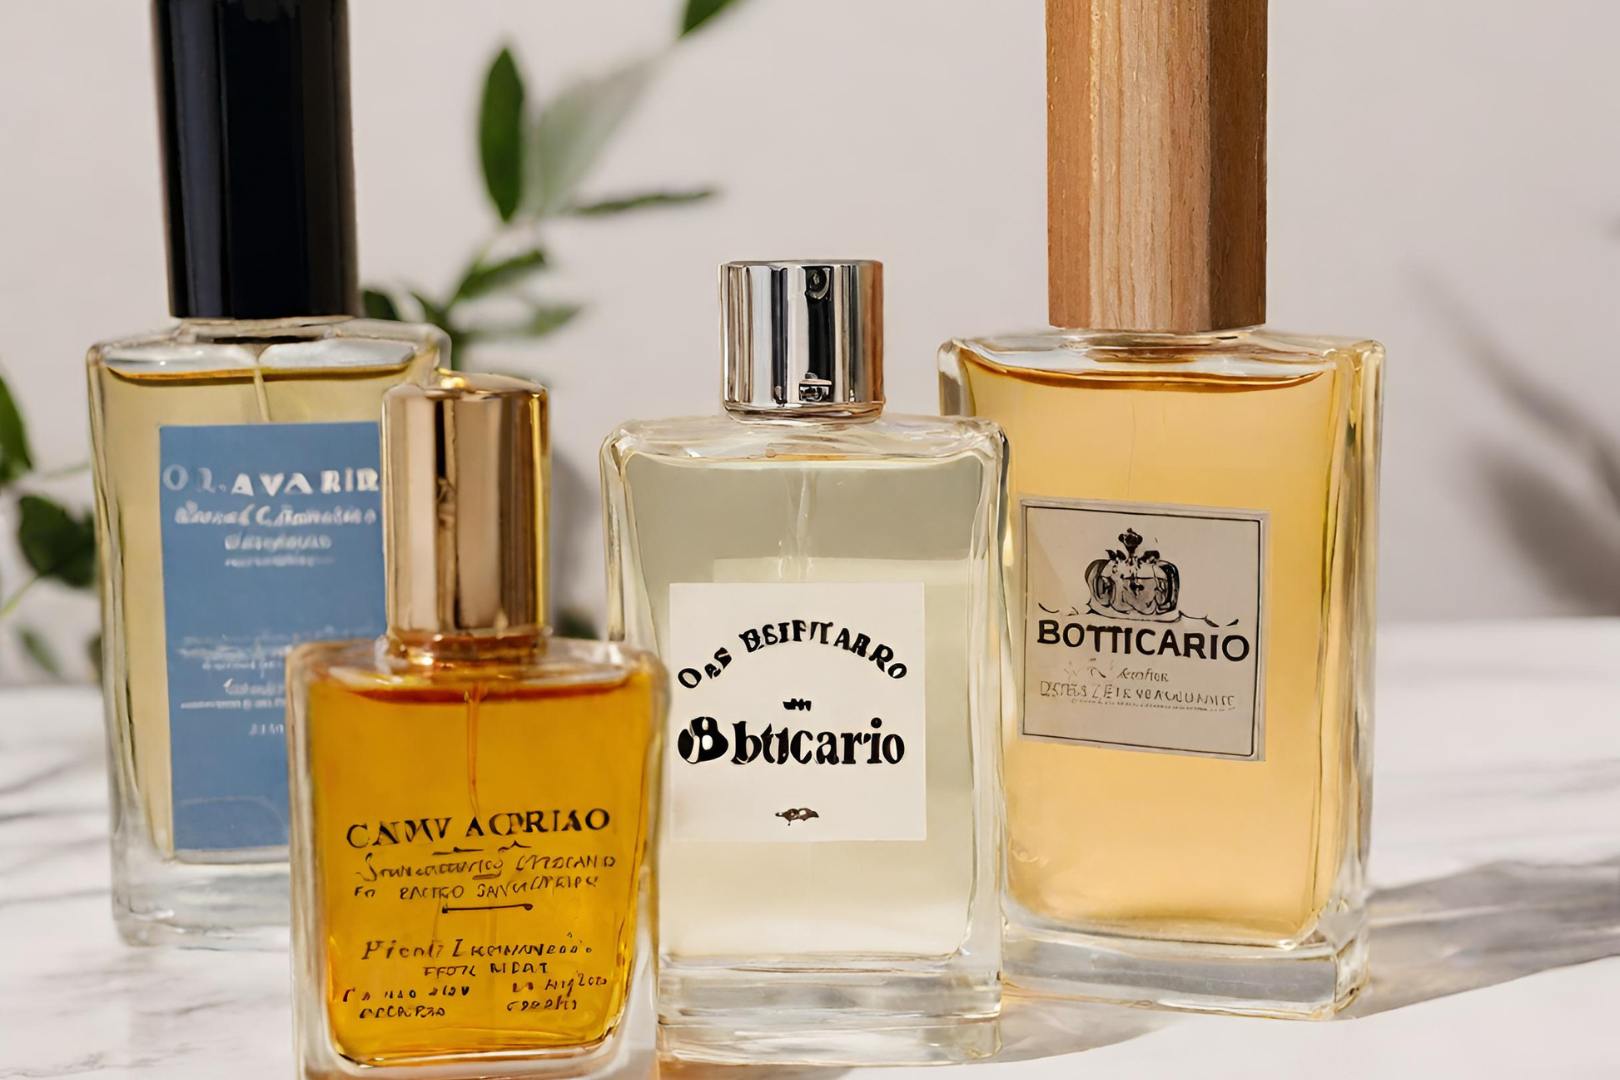 Melhores Perfumes Masculinos Boticario: 10 Ótimas Opções